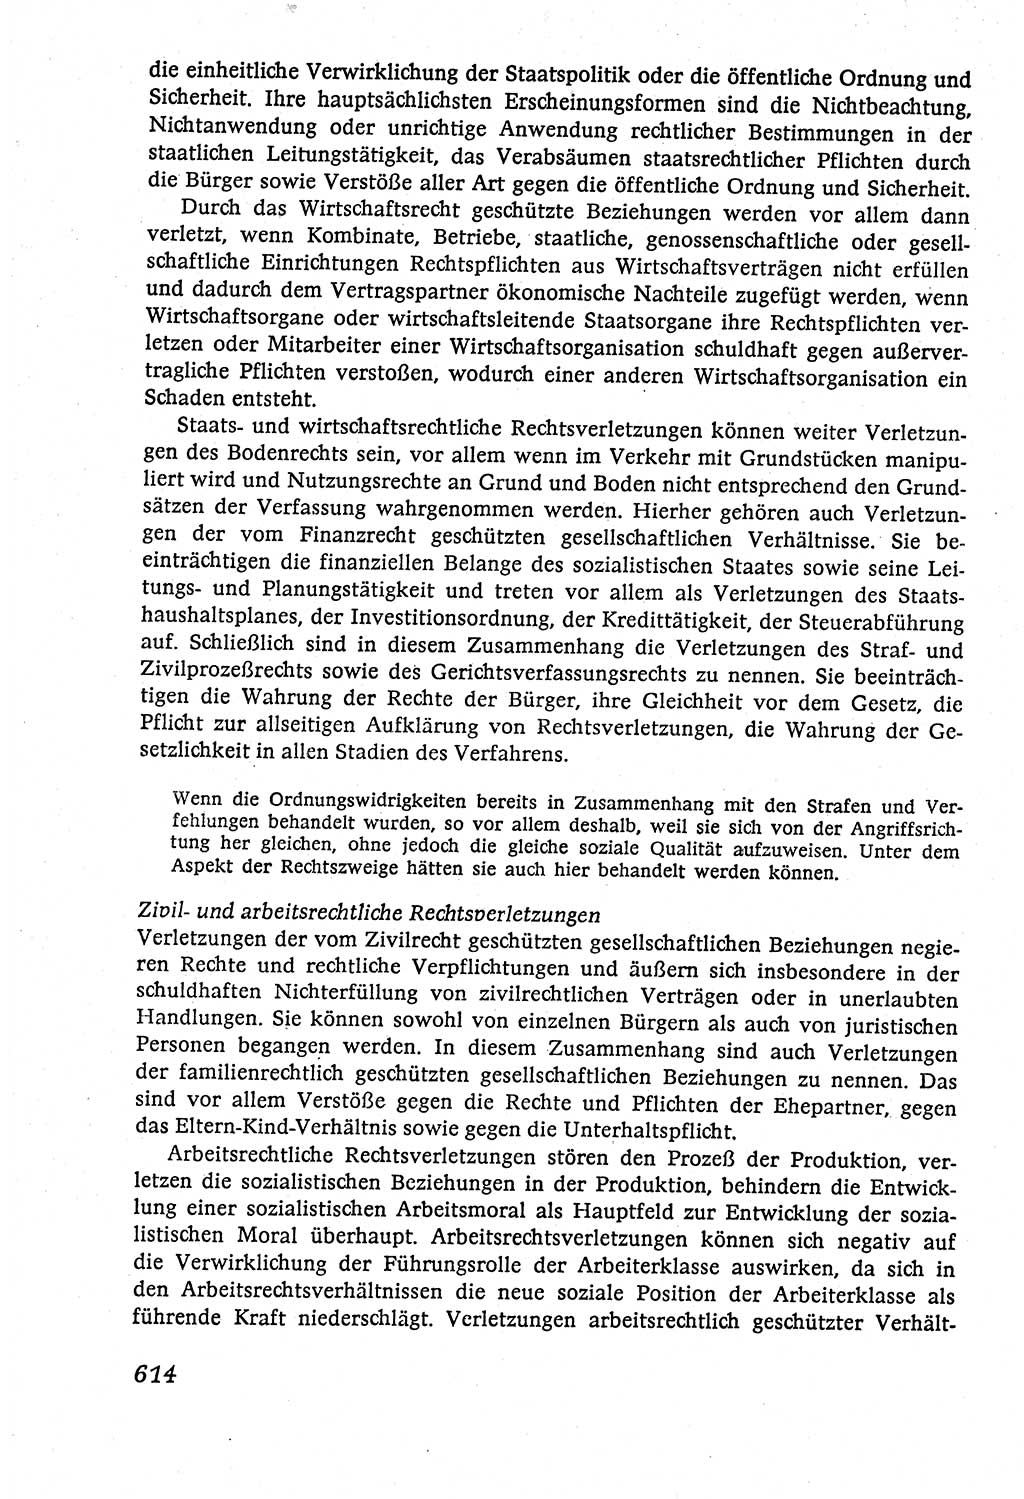 Marxistisch-leninistische (ML) Staats- und Rechtstheorie [Deutsche Demokratische Republik (DDR)], Lehrbuch 1980, Seite 614 (ML St.-R.-Th. DDR Lb. 1980, S. 614)